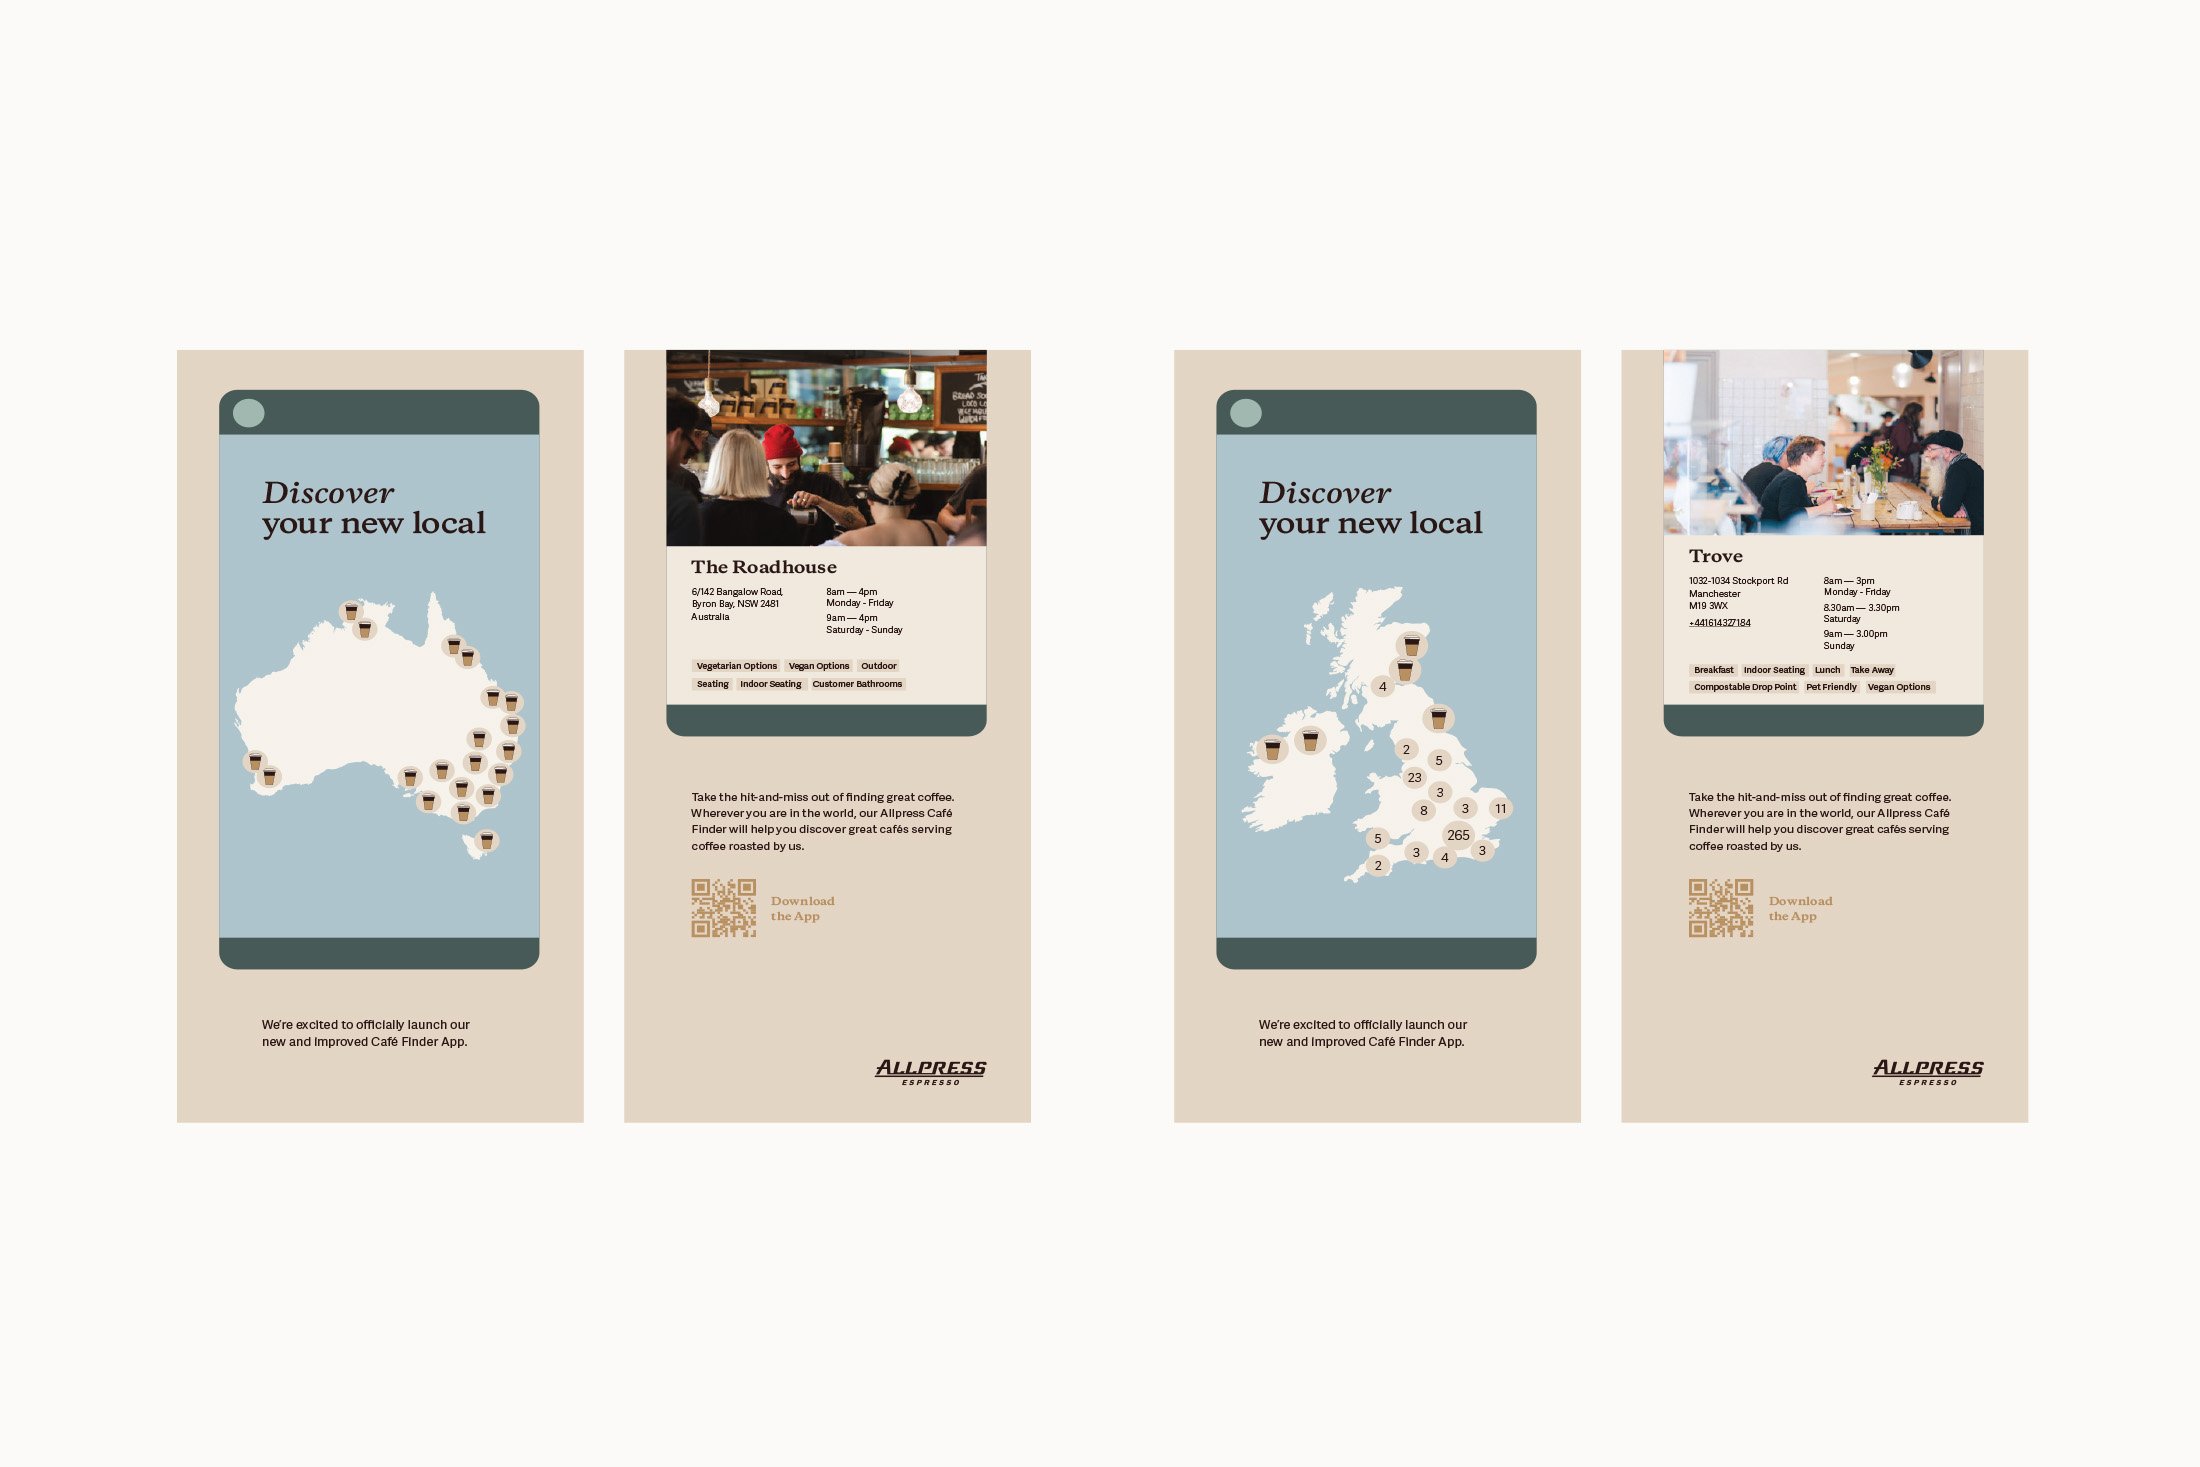  Allpress Espresso: Allpress Café Finder app launch, print and social campaign assets produced. 